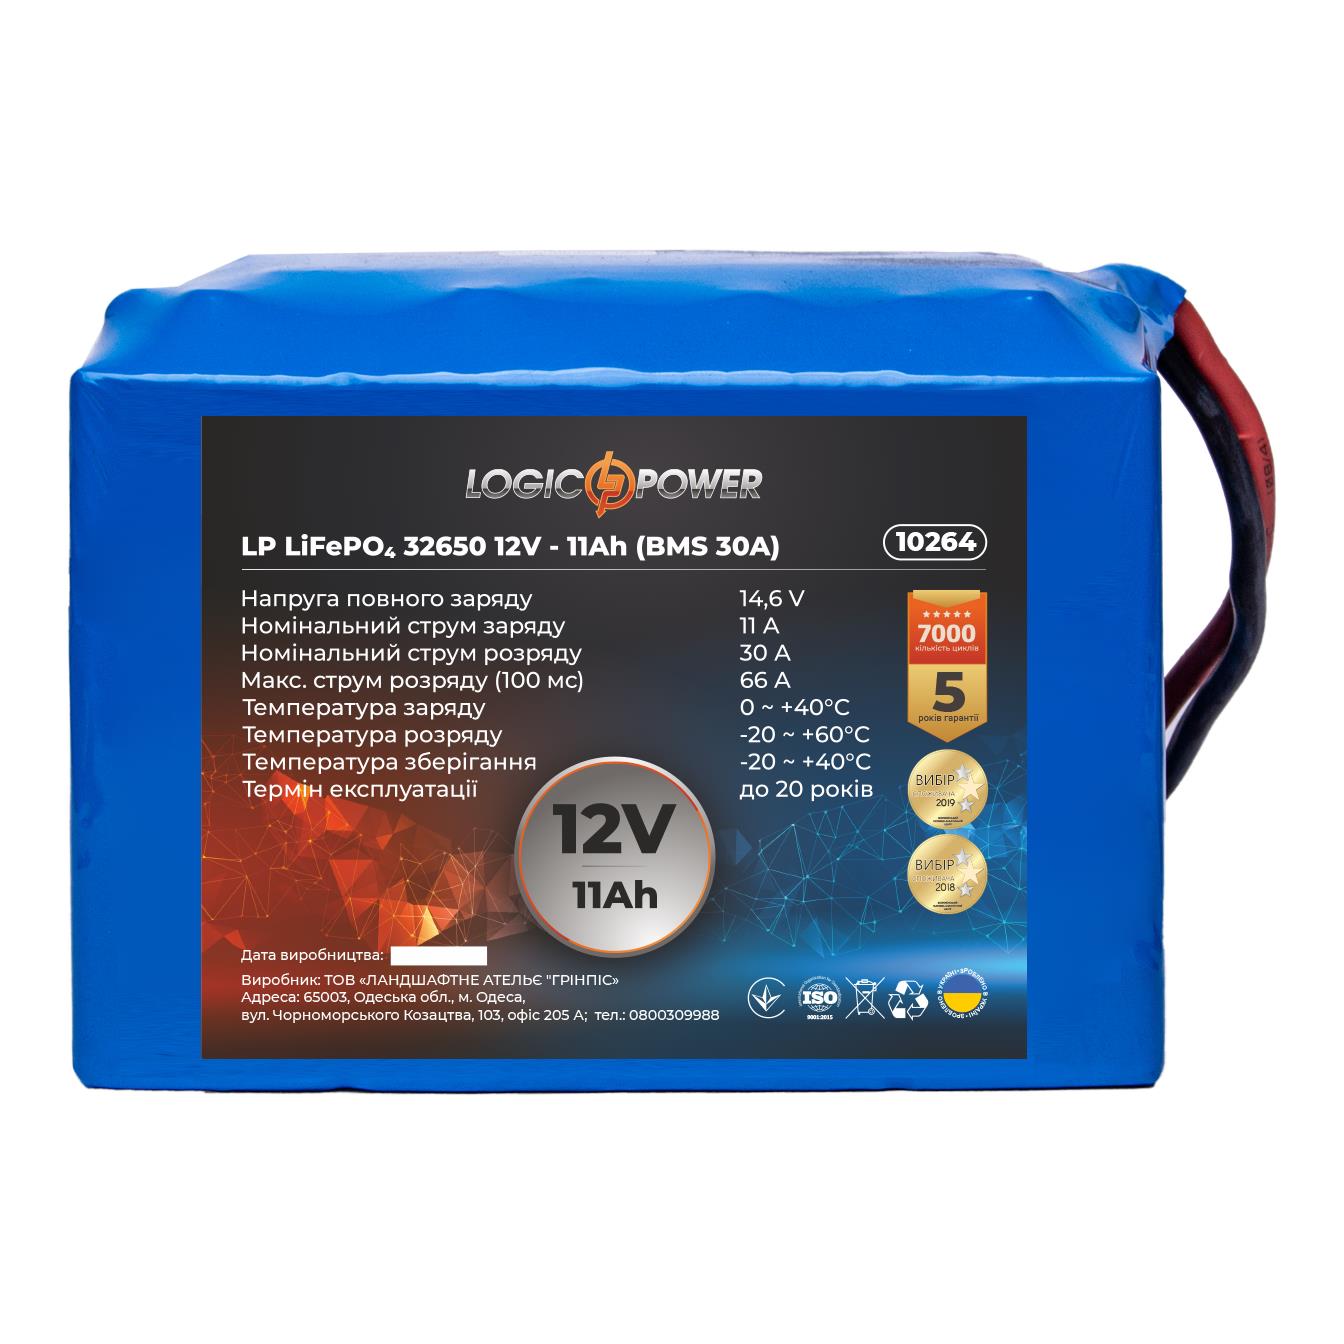 Ціна акумулятор літій-залізо-фосфатний LogicPower LP LiFePO4 32650 12V - 11 Ah (BMS 30A) (10264) в Львові